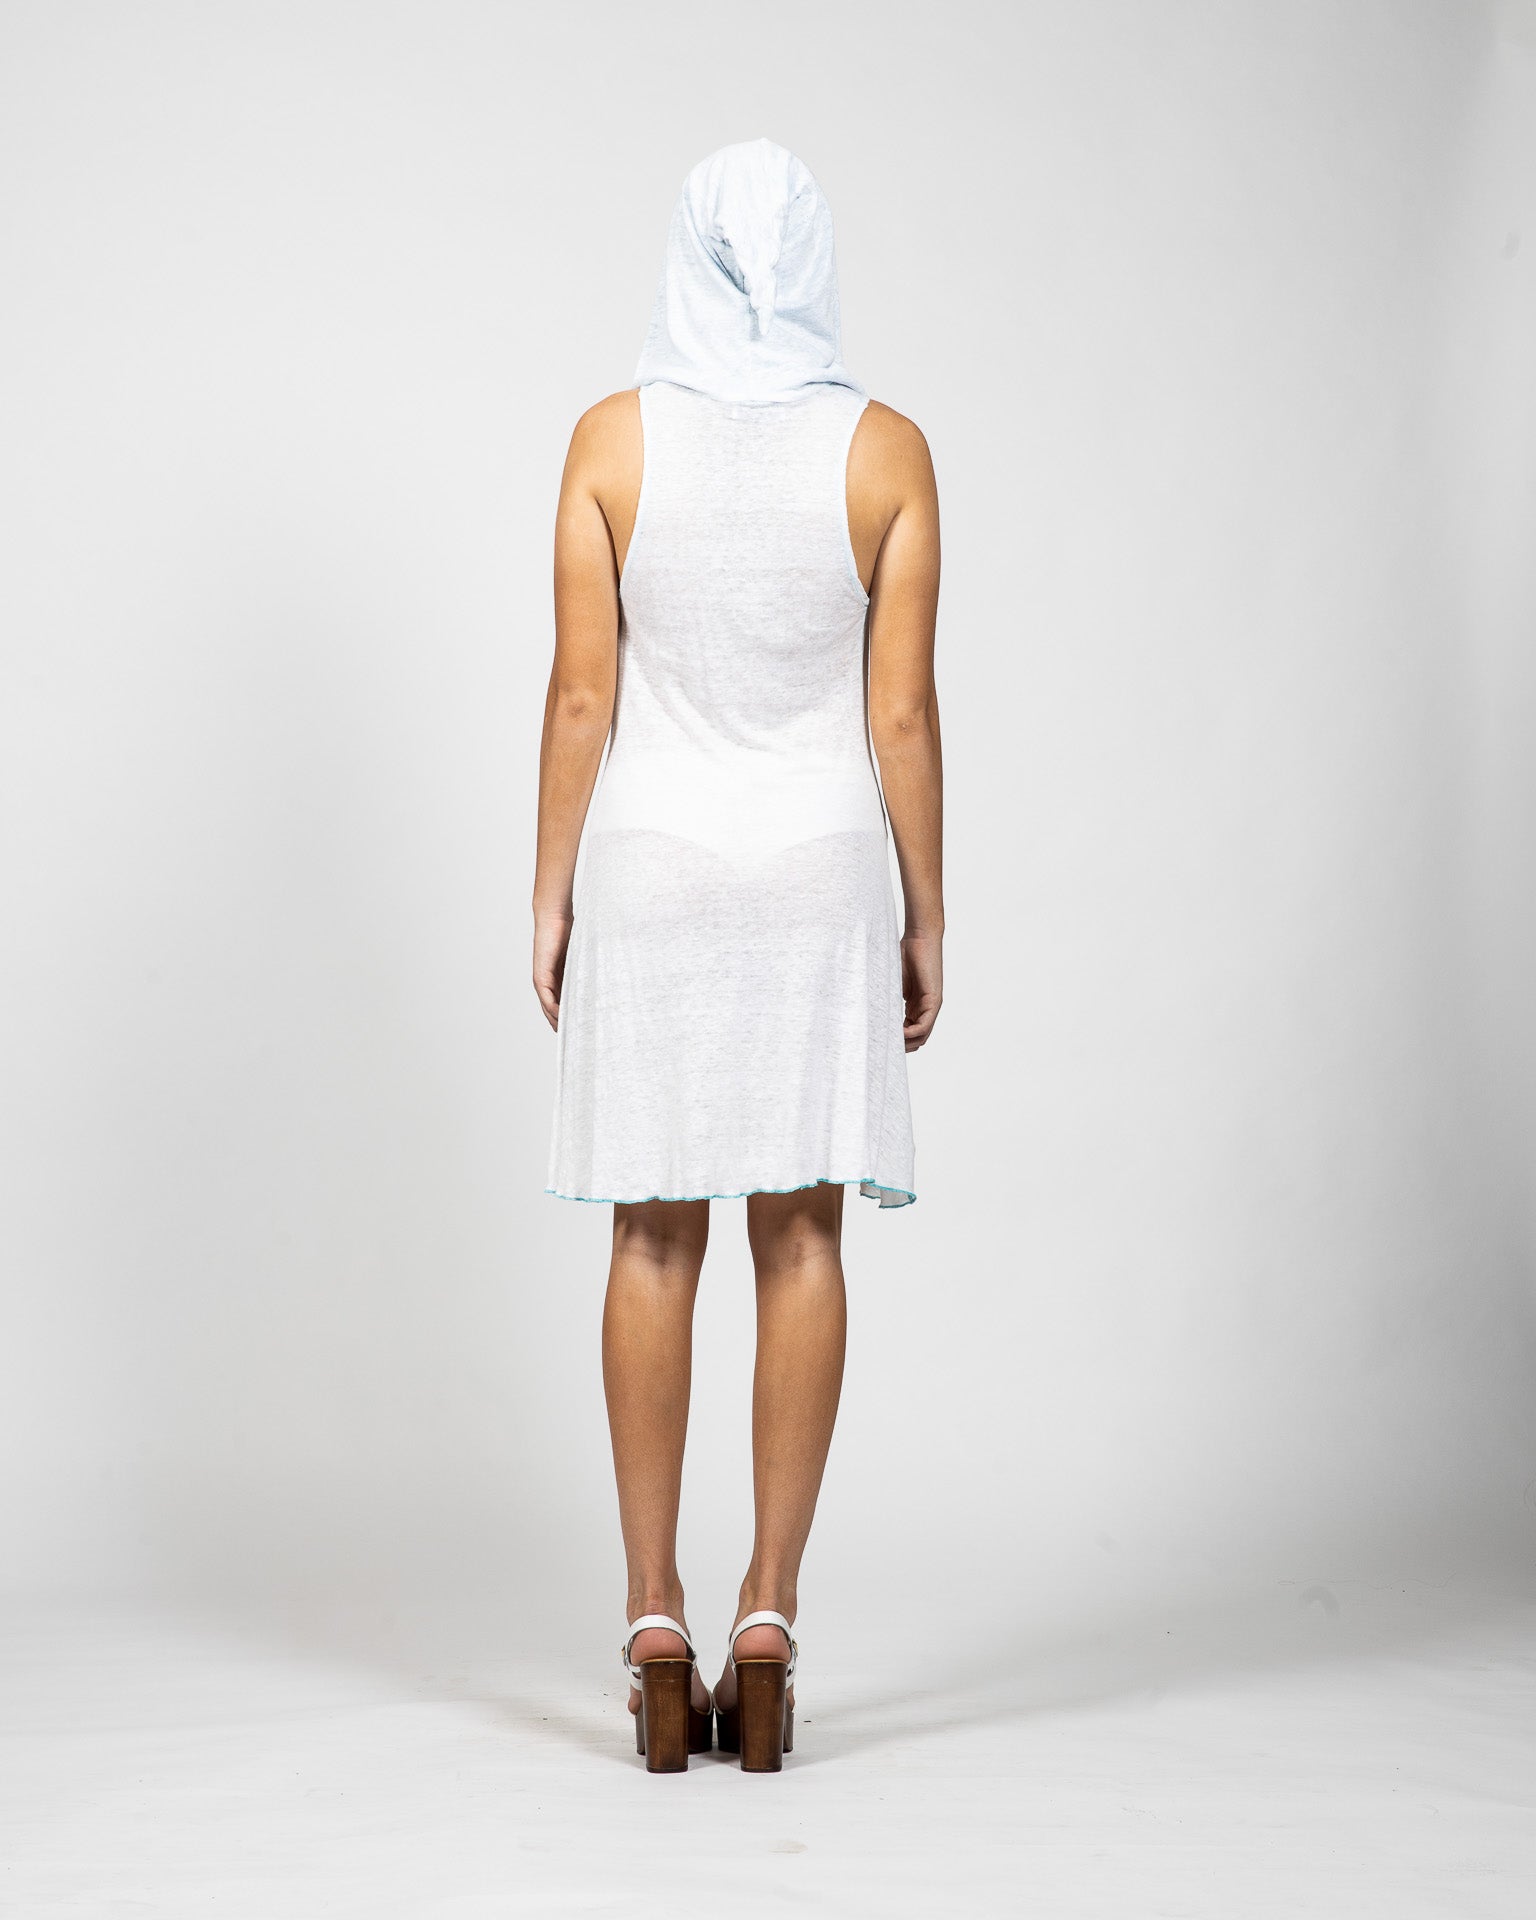 White Linen Hooded Dress - Back View - Samuel Vartan